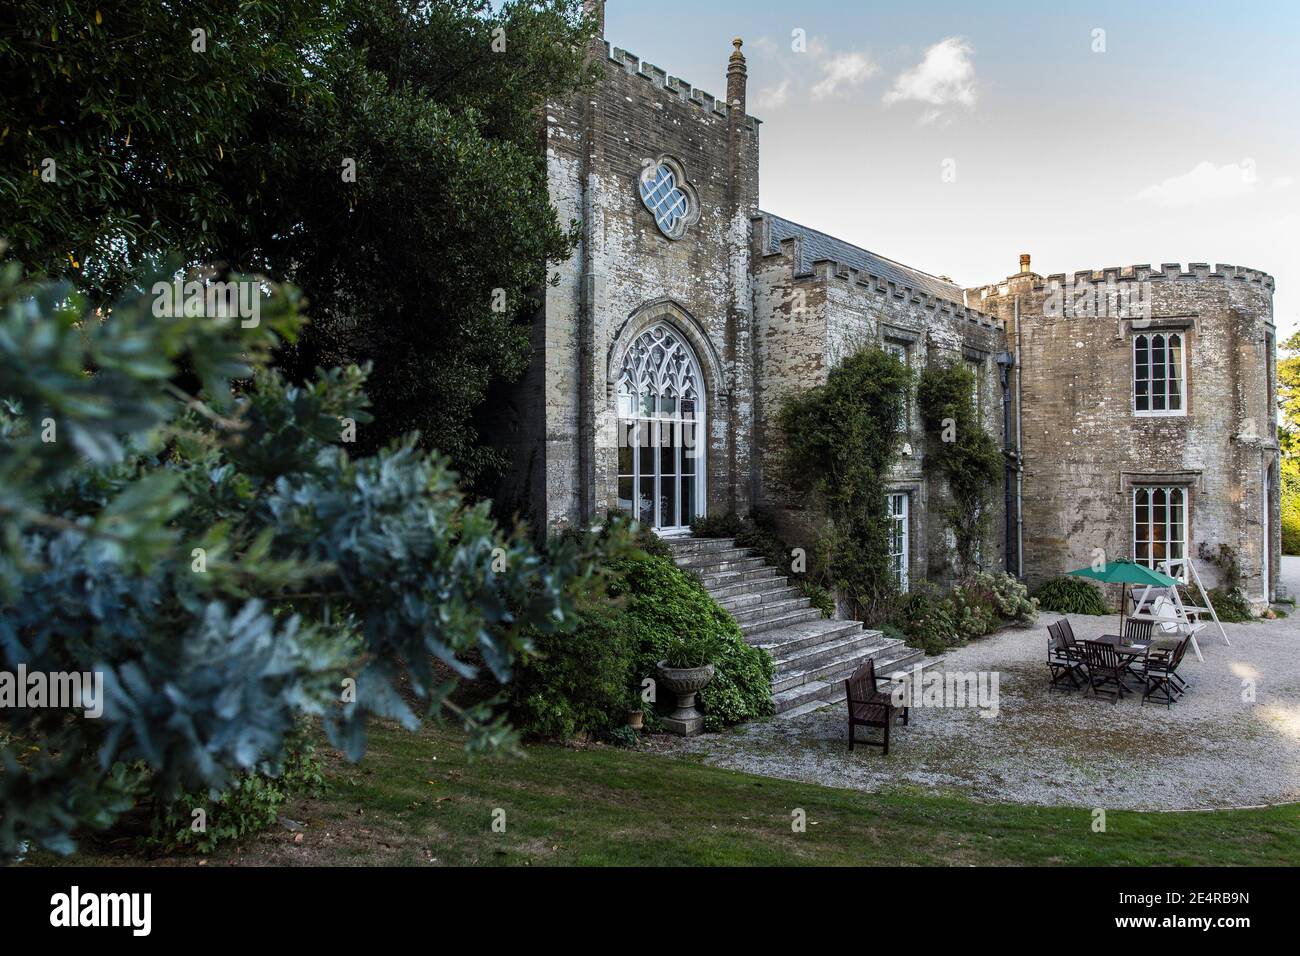 GROSSBRITANNIEN/ England / Cornwall / Außenansicht des Pridequx Palace in Padstow, Großbritannien. Stockfoto